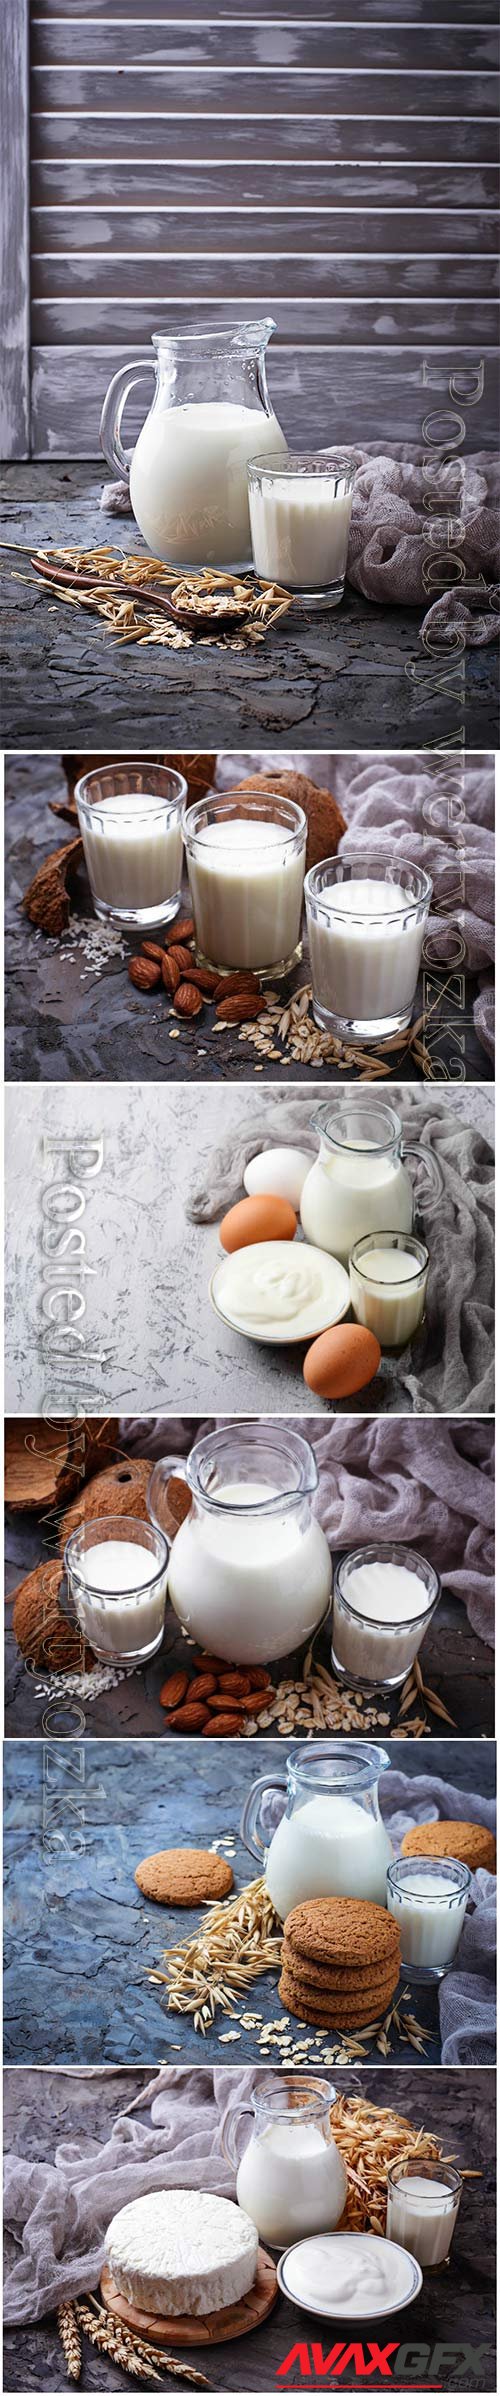 Milk, sour cream and eggs